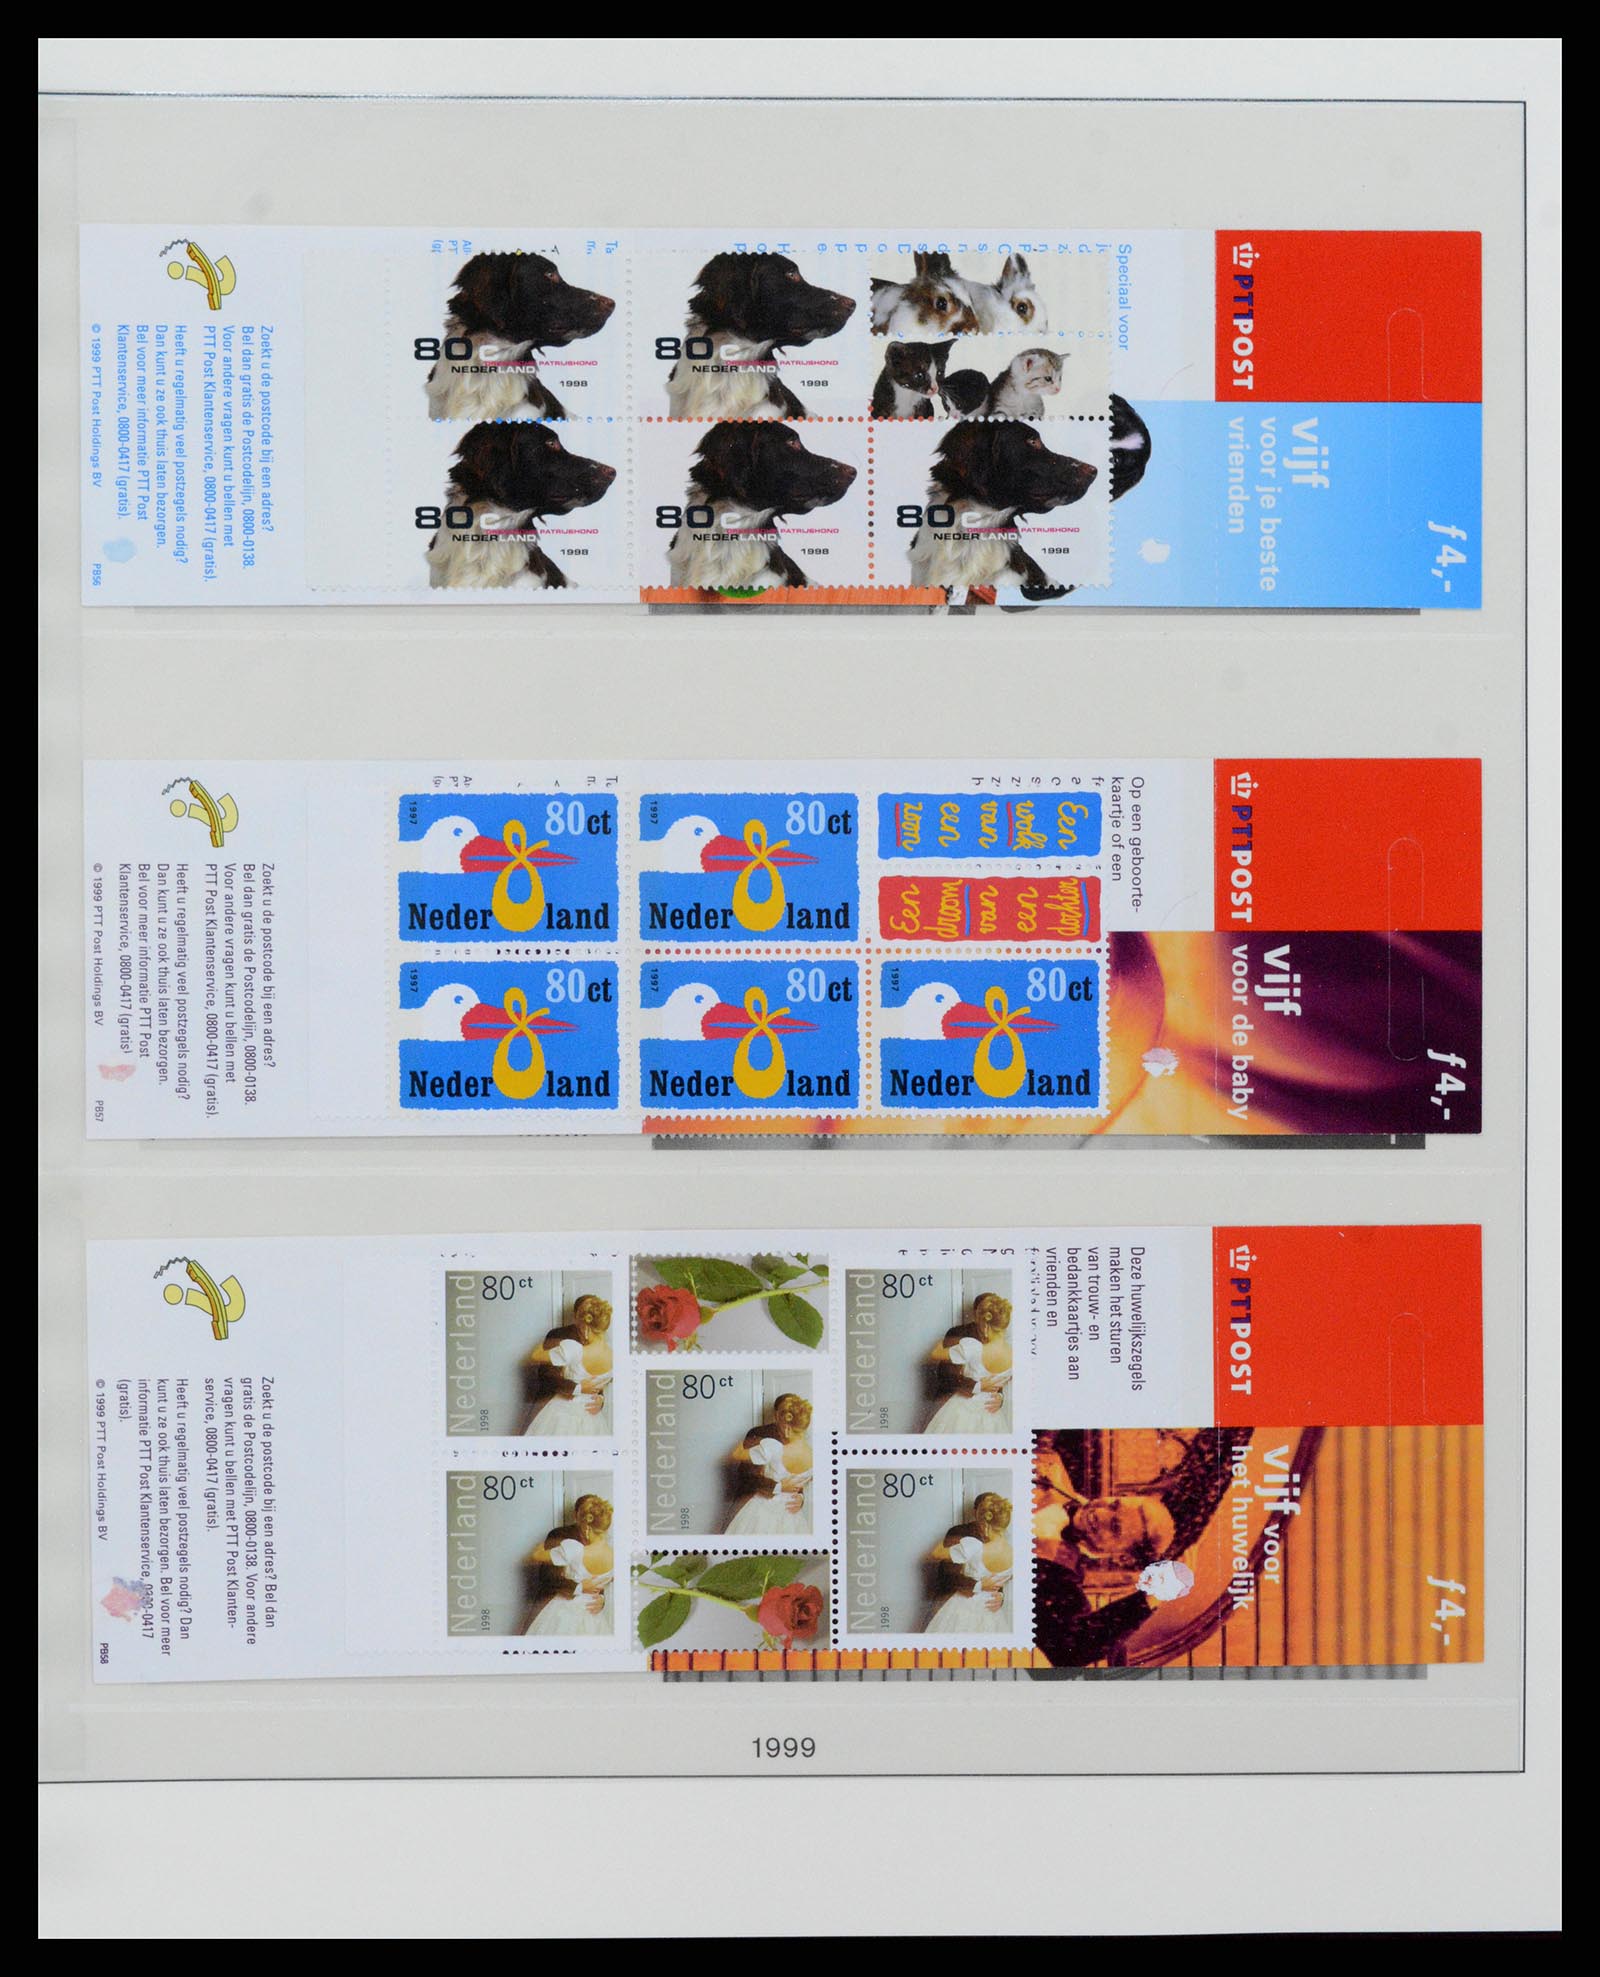 37994 032 - Stamp Collection 37994 Netherlands stampbooklets 1964-2002.